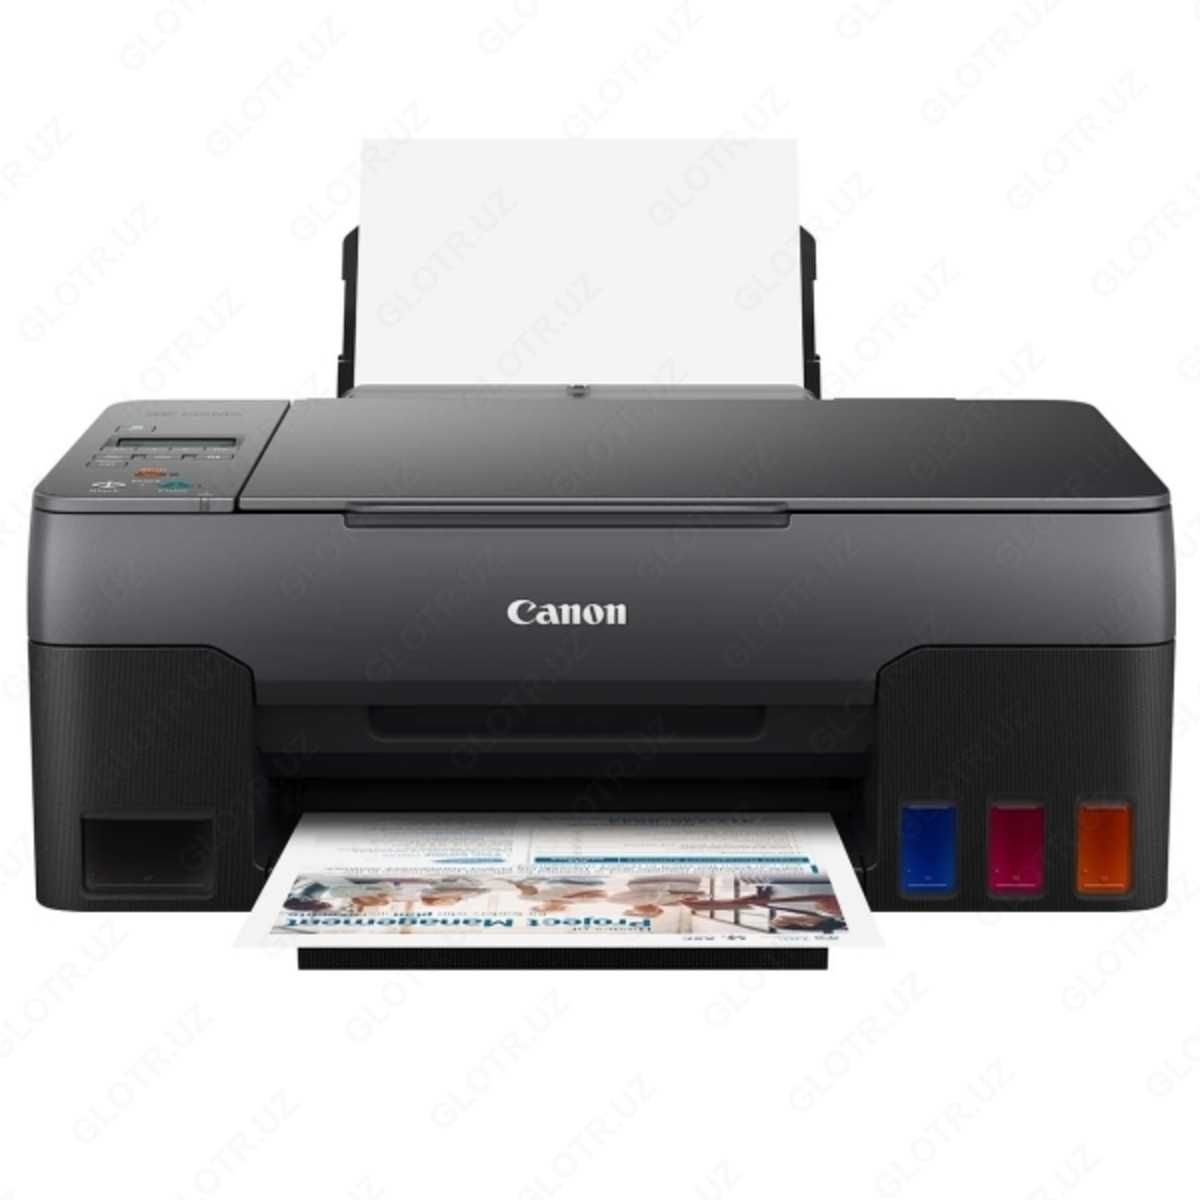 √ НОВЫЙ! Принтер Canon Pixma G2420 А4 3в1 (доставка за 2 часа*)